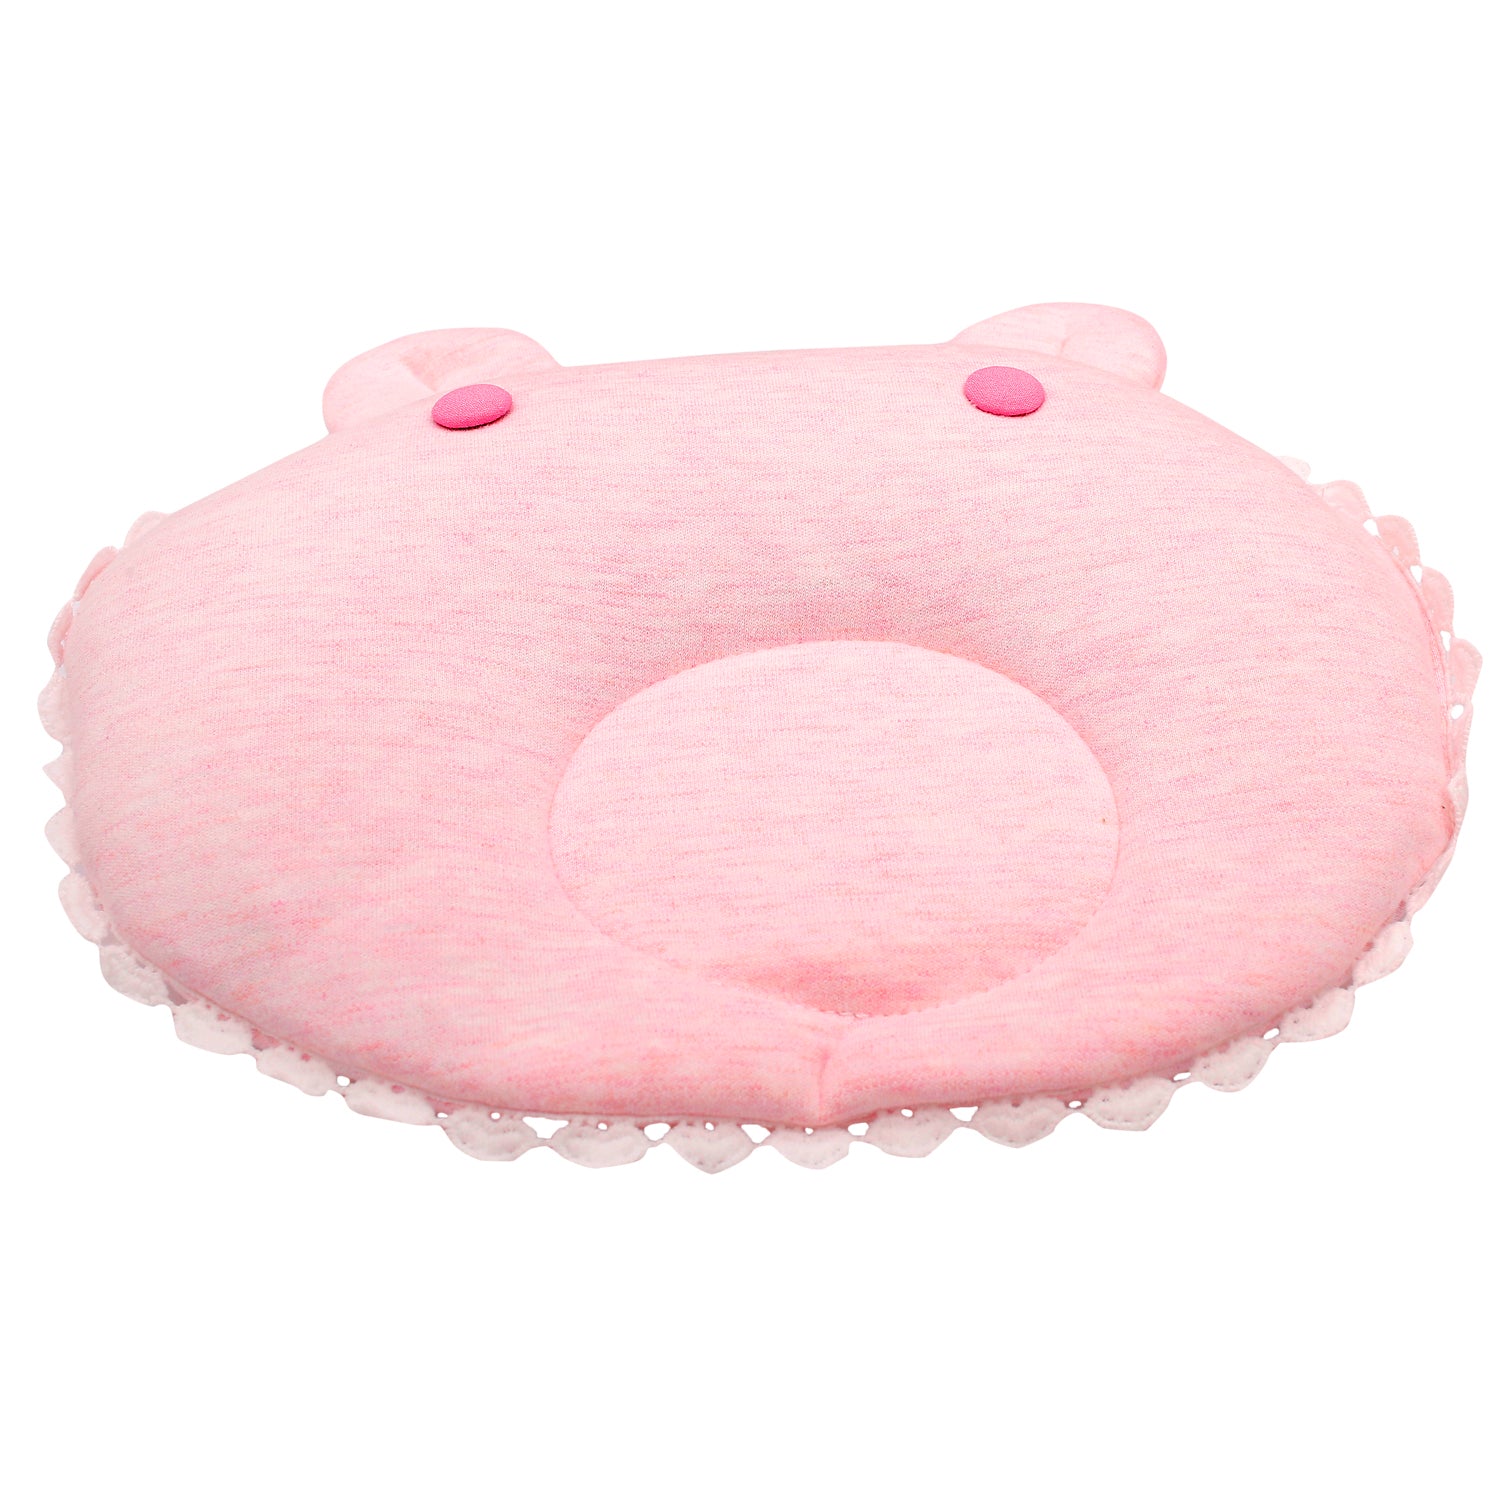 Pink Round Pillow Set - Baby Moo